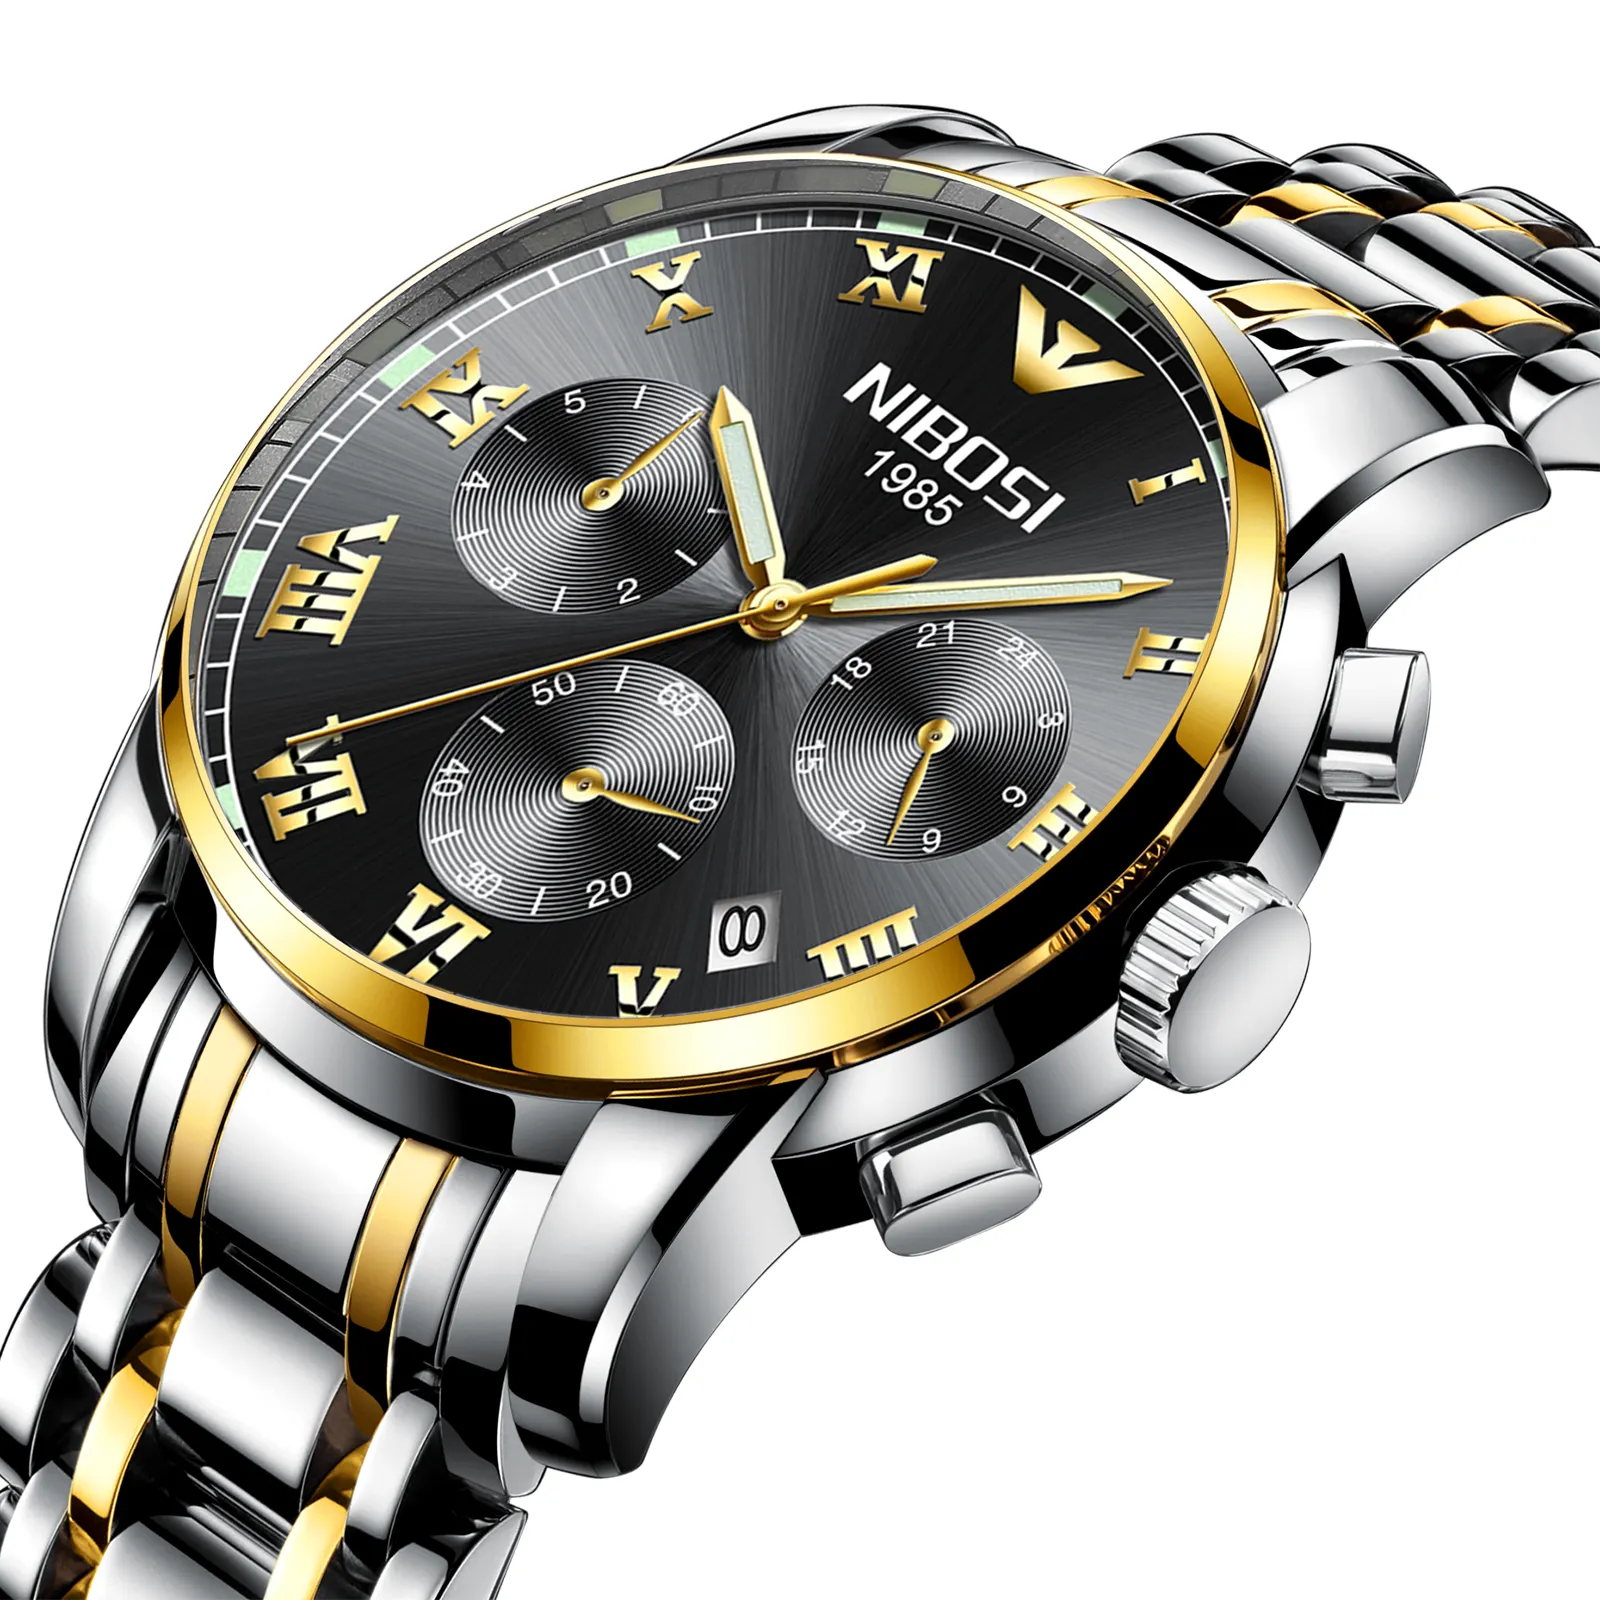 NIBOSI 2301ผู้ชายนาฬิกาข้อมือควอตซ์นาฬิกาข้อมือ Elegance นาฬิกาสแตนเลส